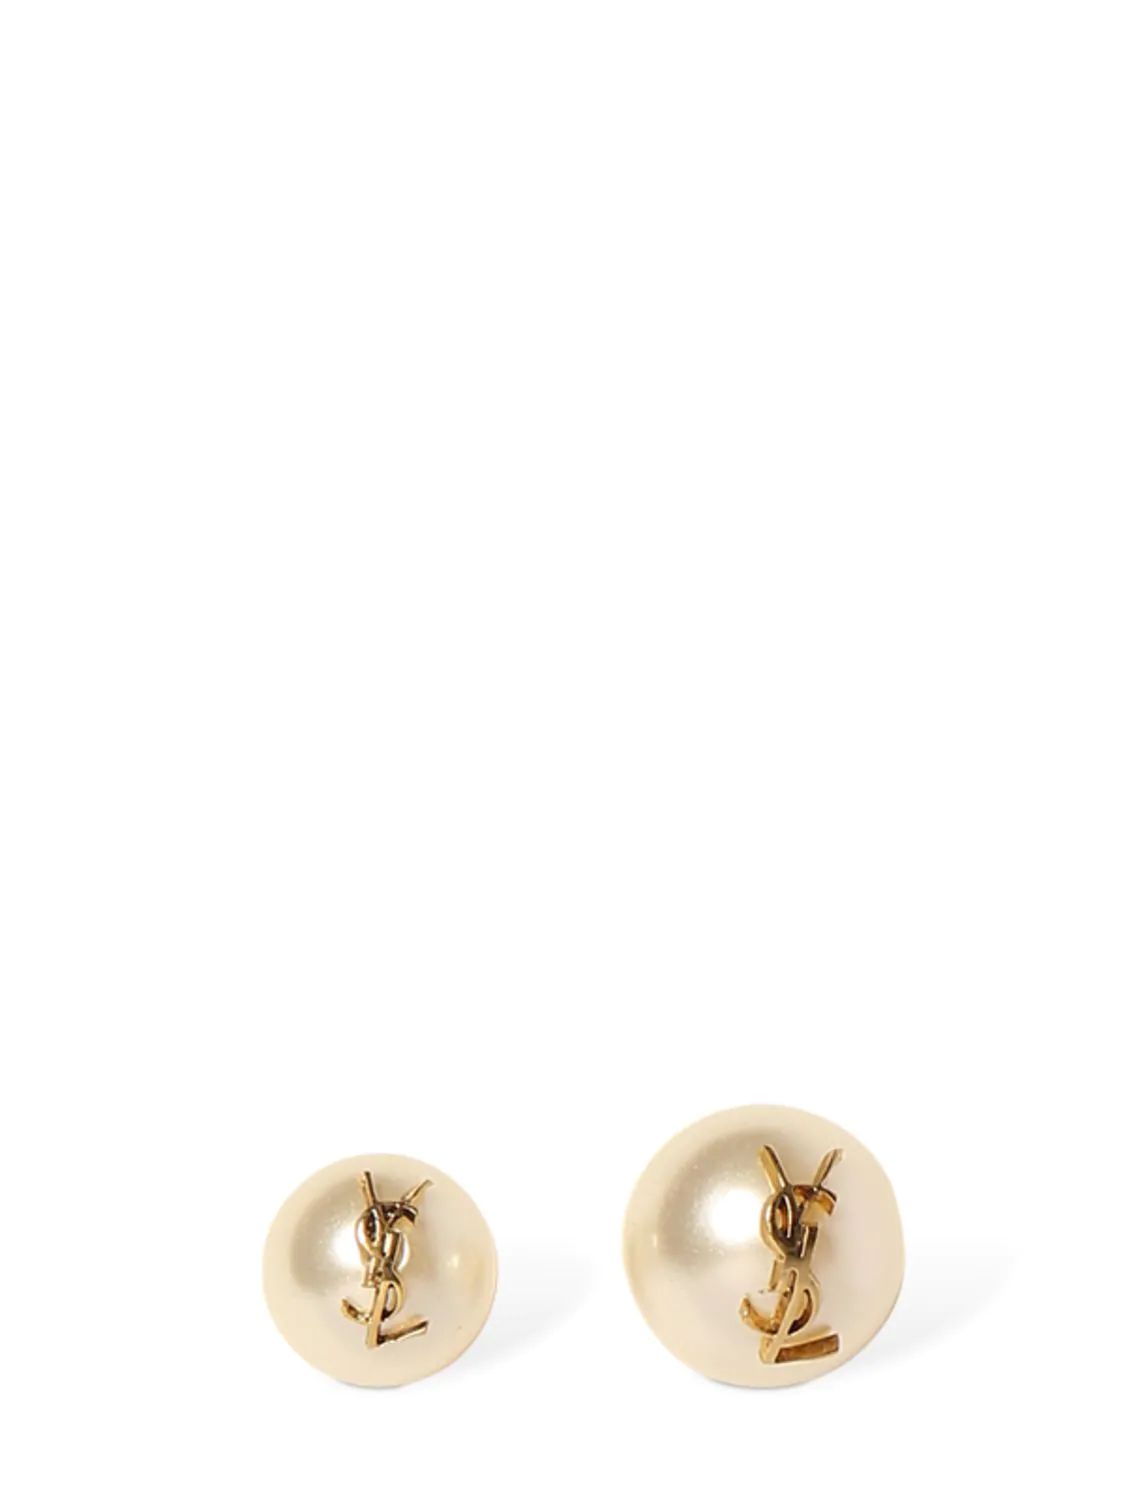 Ysl Imitation Pearl Stud Earrings | Luisaviaroma